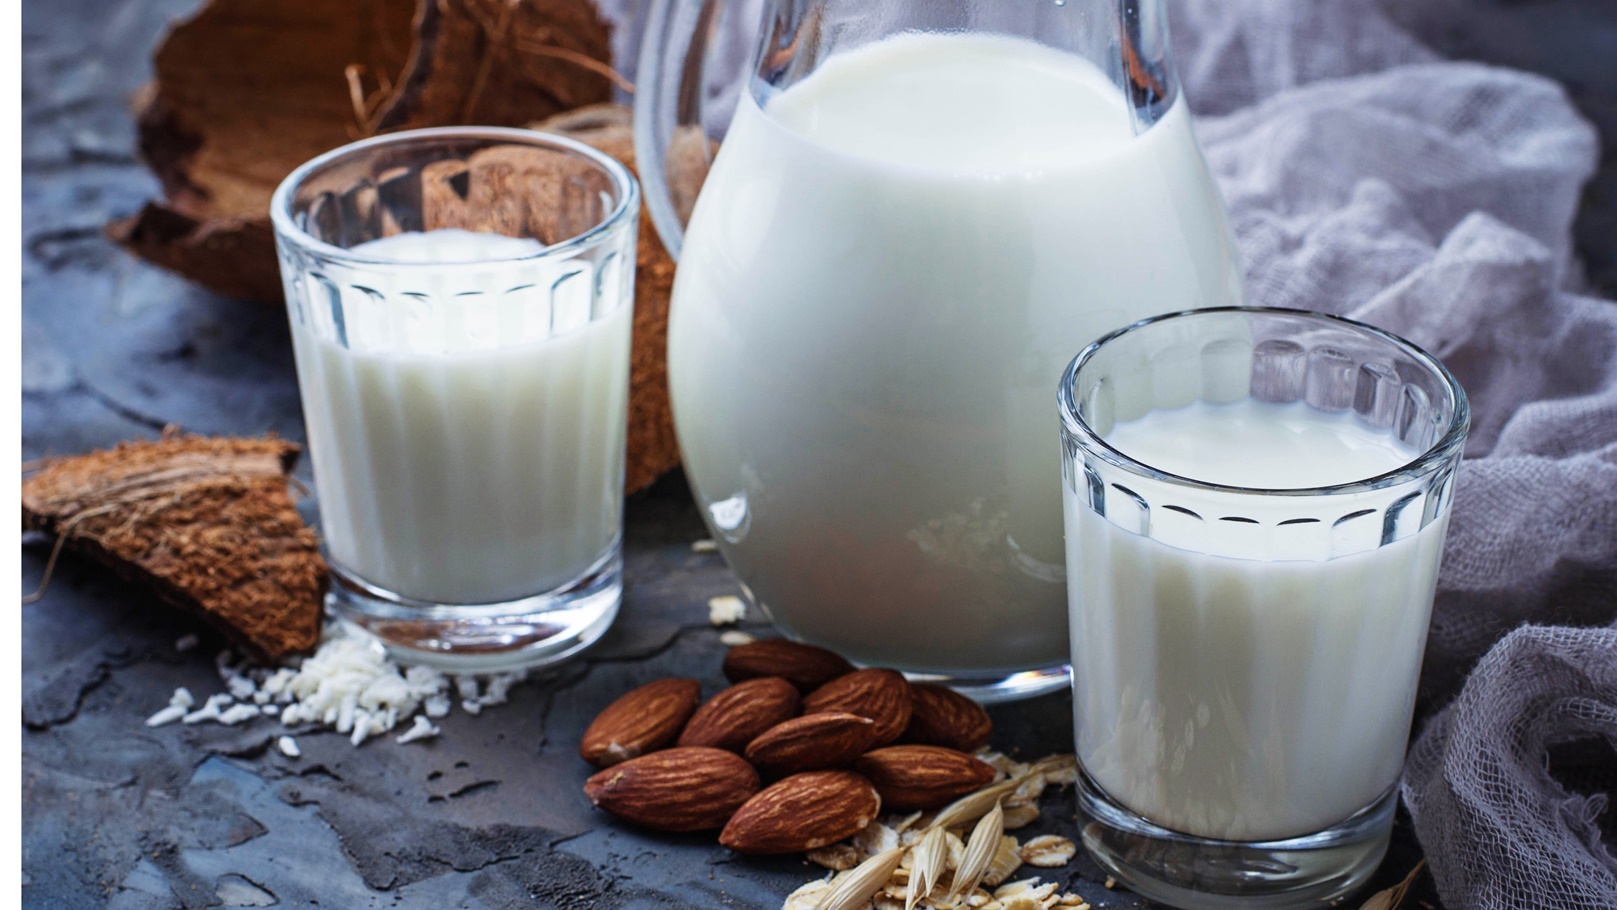 different-types-of-vegan-lactose-free-milk-2021-08-26-19-01-38-utc